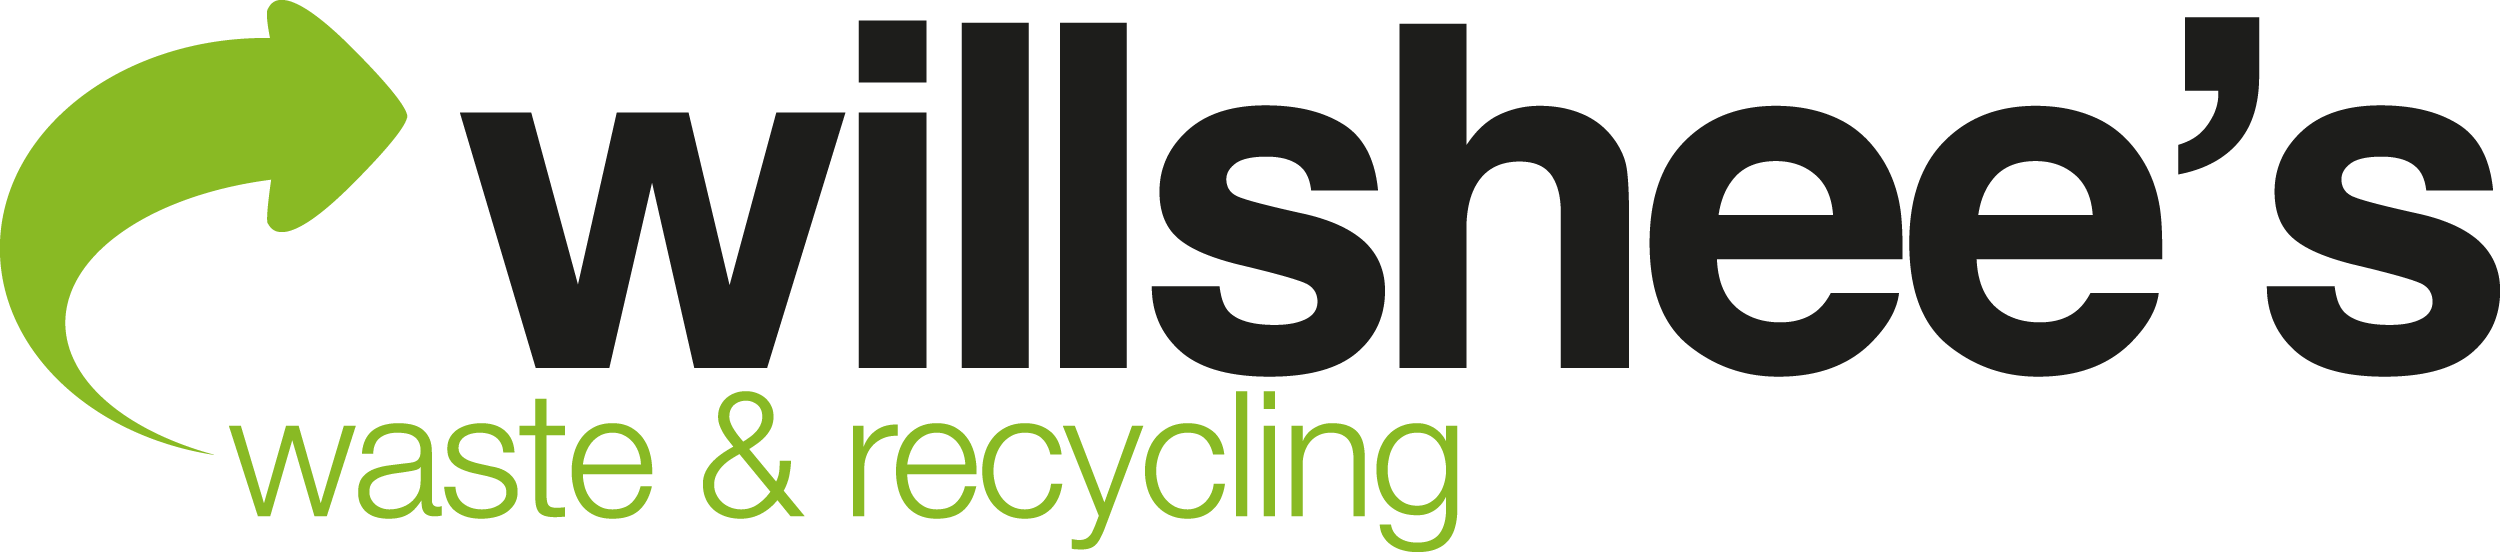 Willshee’s Waste & Recycling Ltd